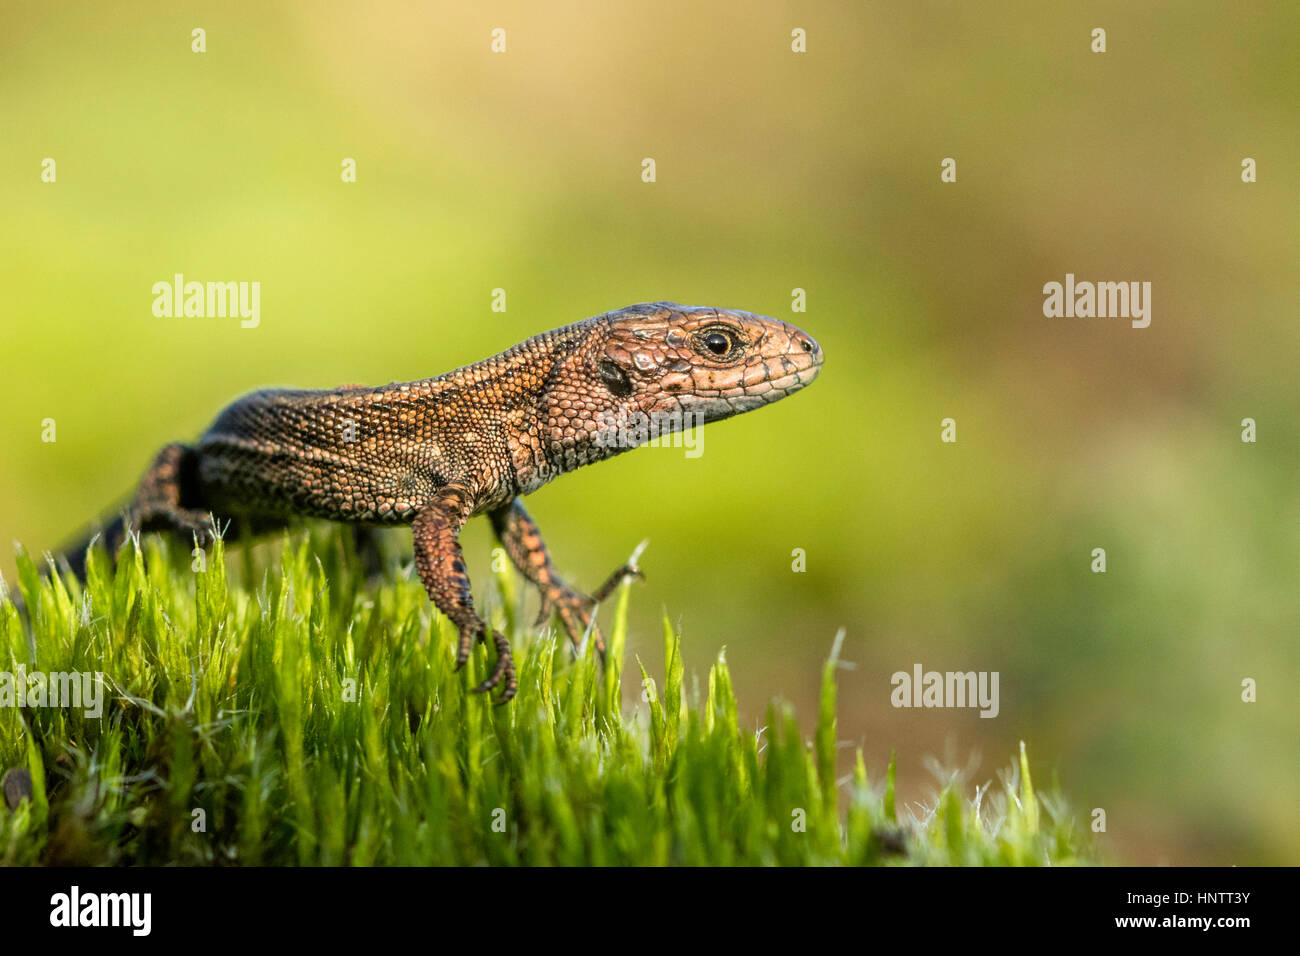 Common lizard (Zootoca vivipara) Stock Photo